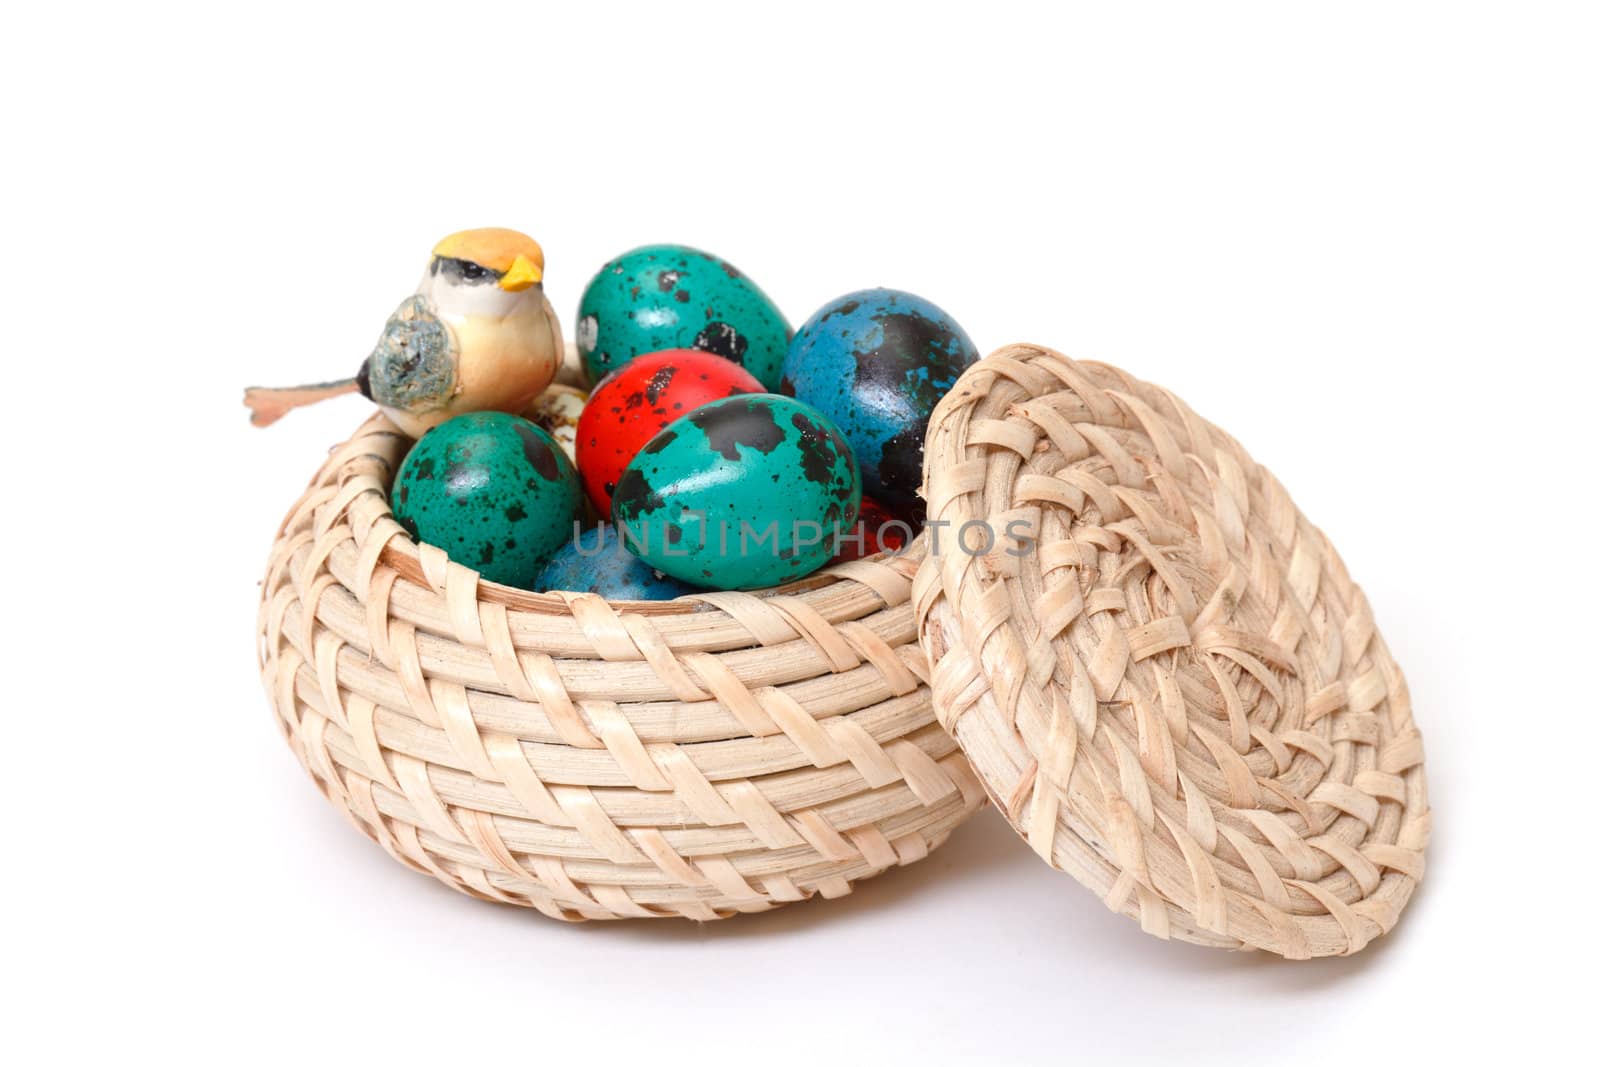 quail easter eggs in basket on white